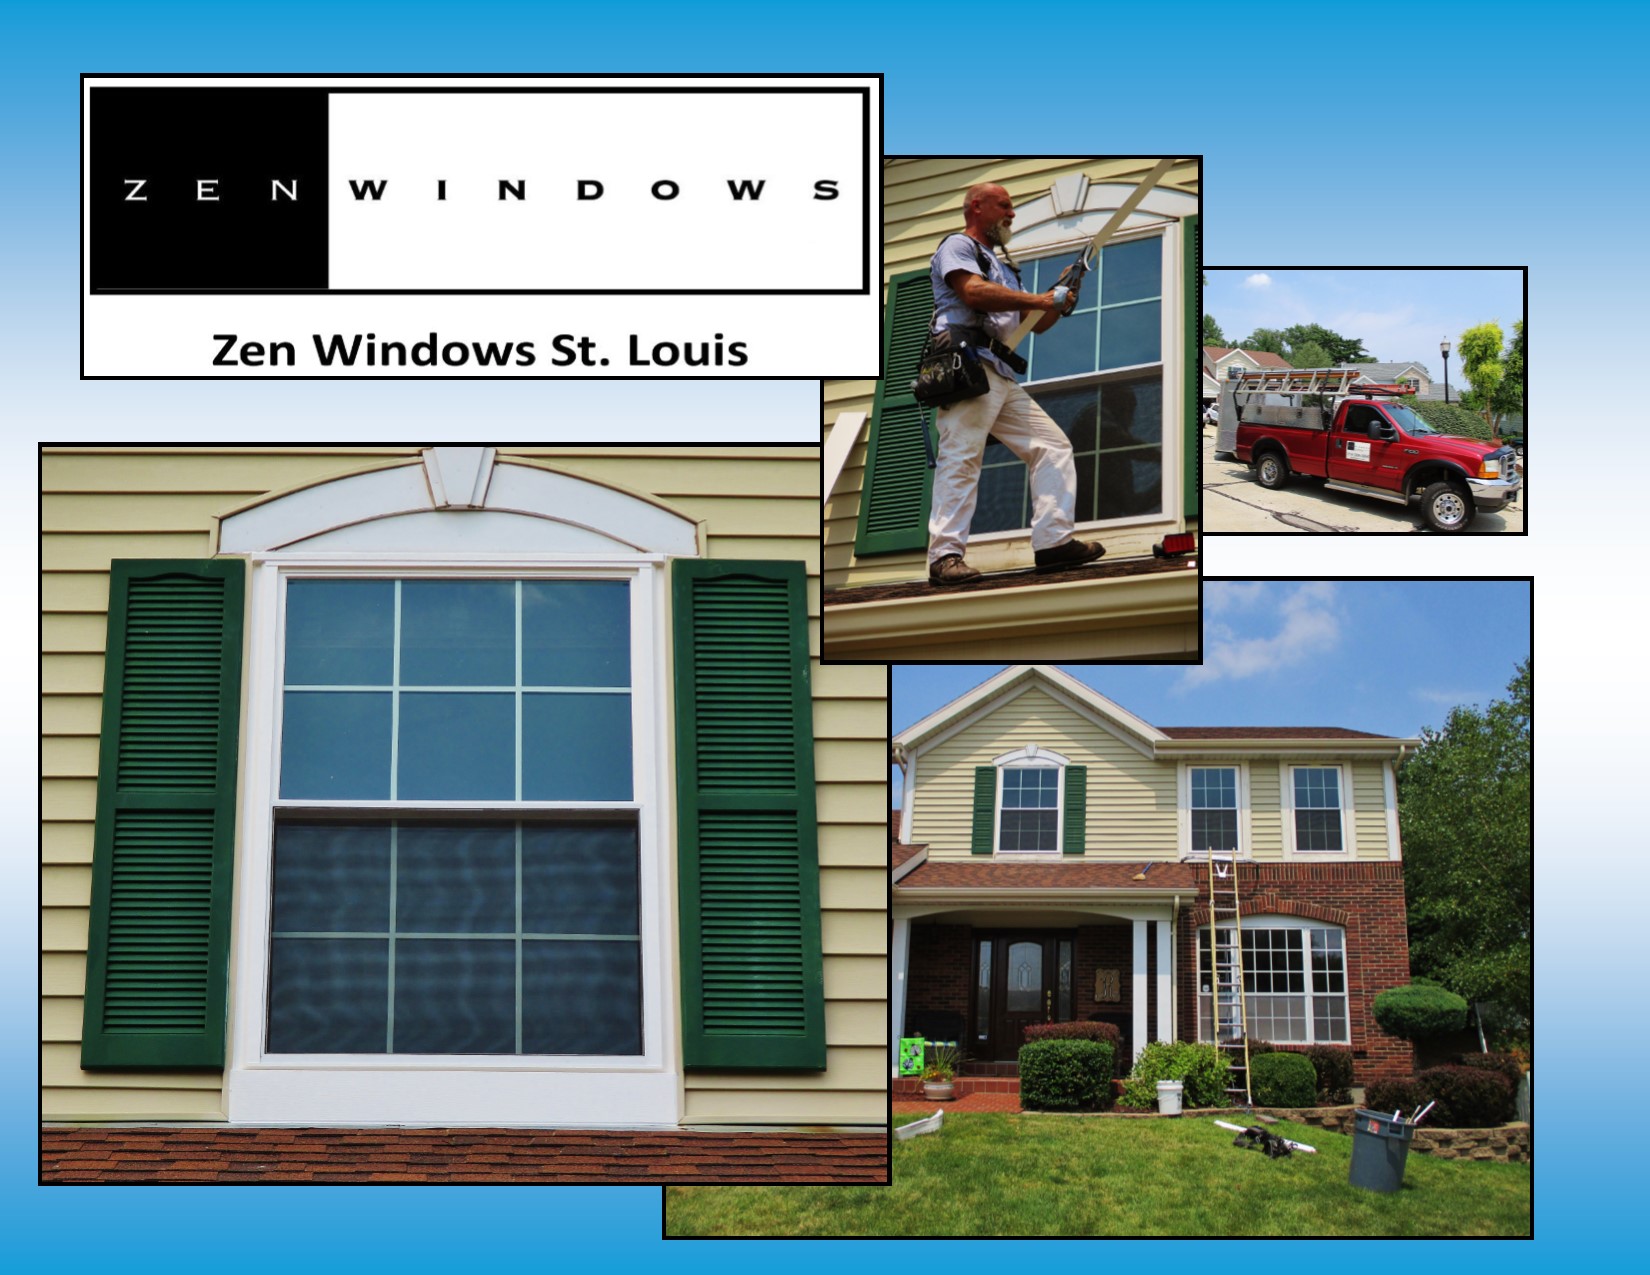 window installer for zen windows st louis performing window replacements